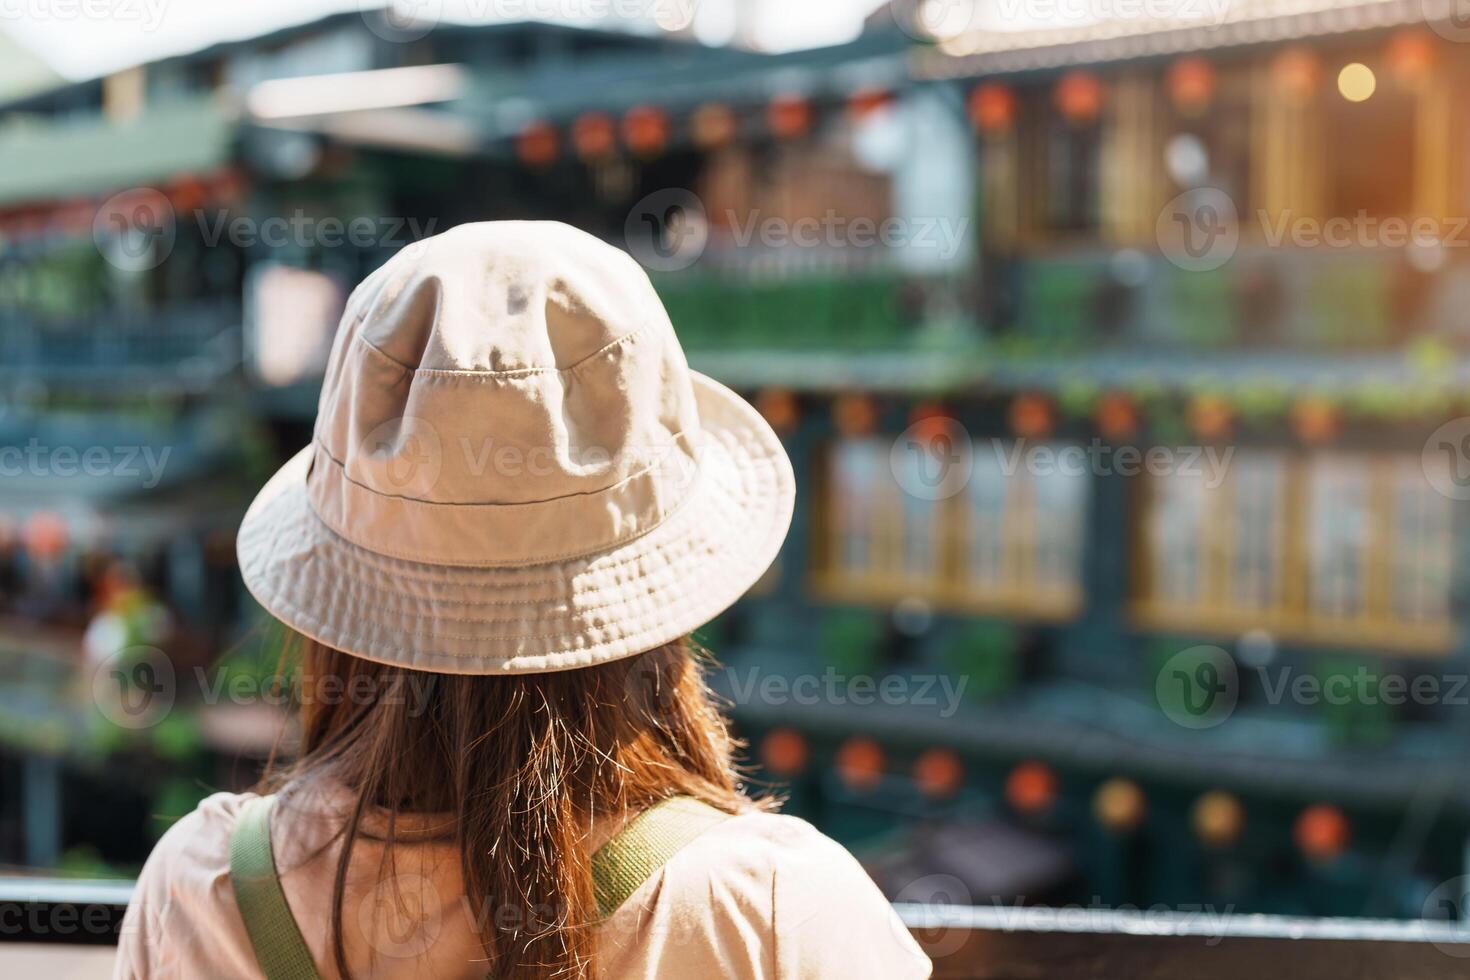 vrouw reiziger bezoekende in Taiwan, toerist met hoed en rugzak bezienswaardigheden bekijken in jiufen oud straat dorp met thee huis achtergrond. mijlpaal en populair attracties in de buurt Taipei stad. reizen concept foto